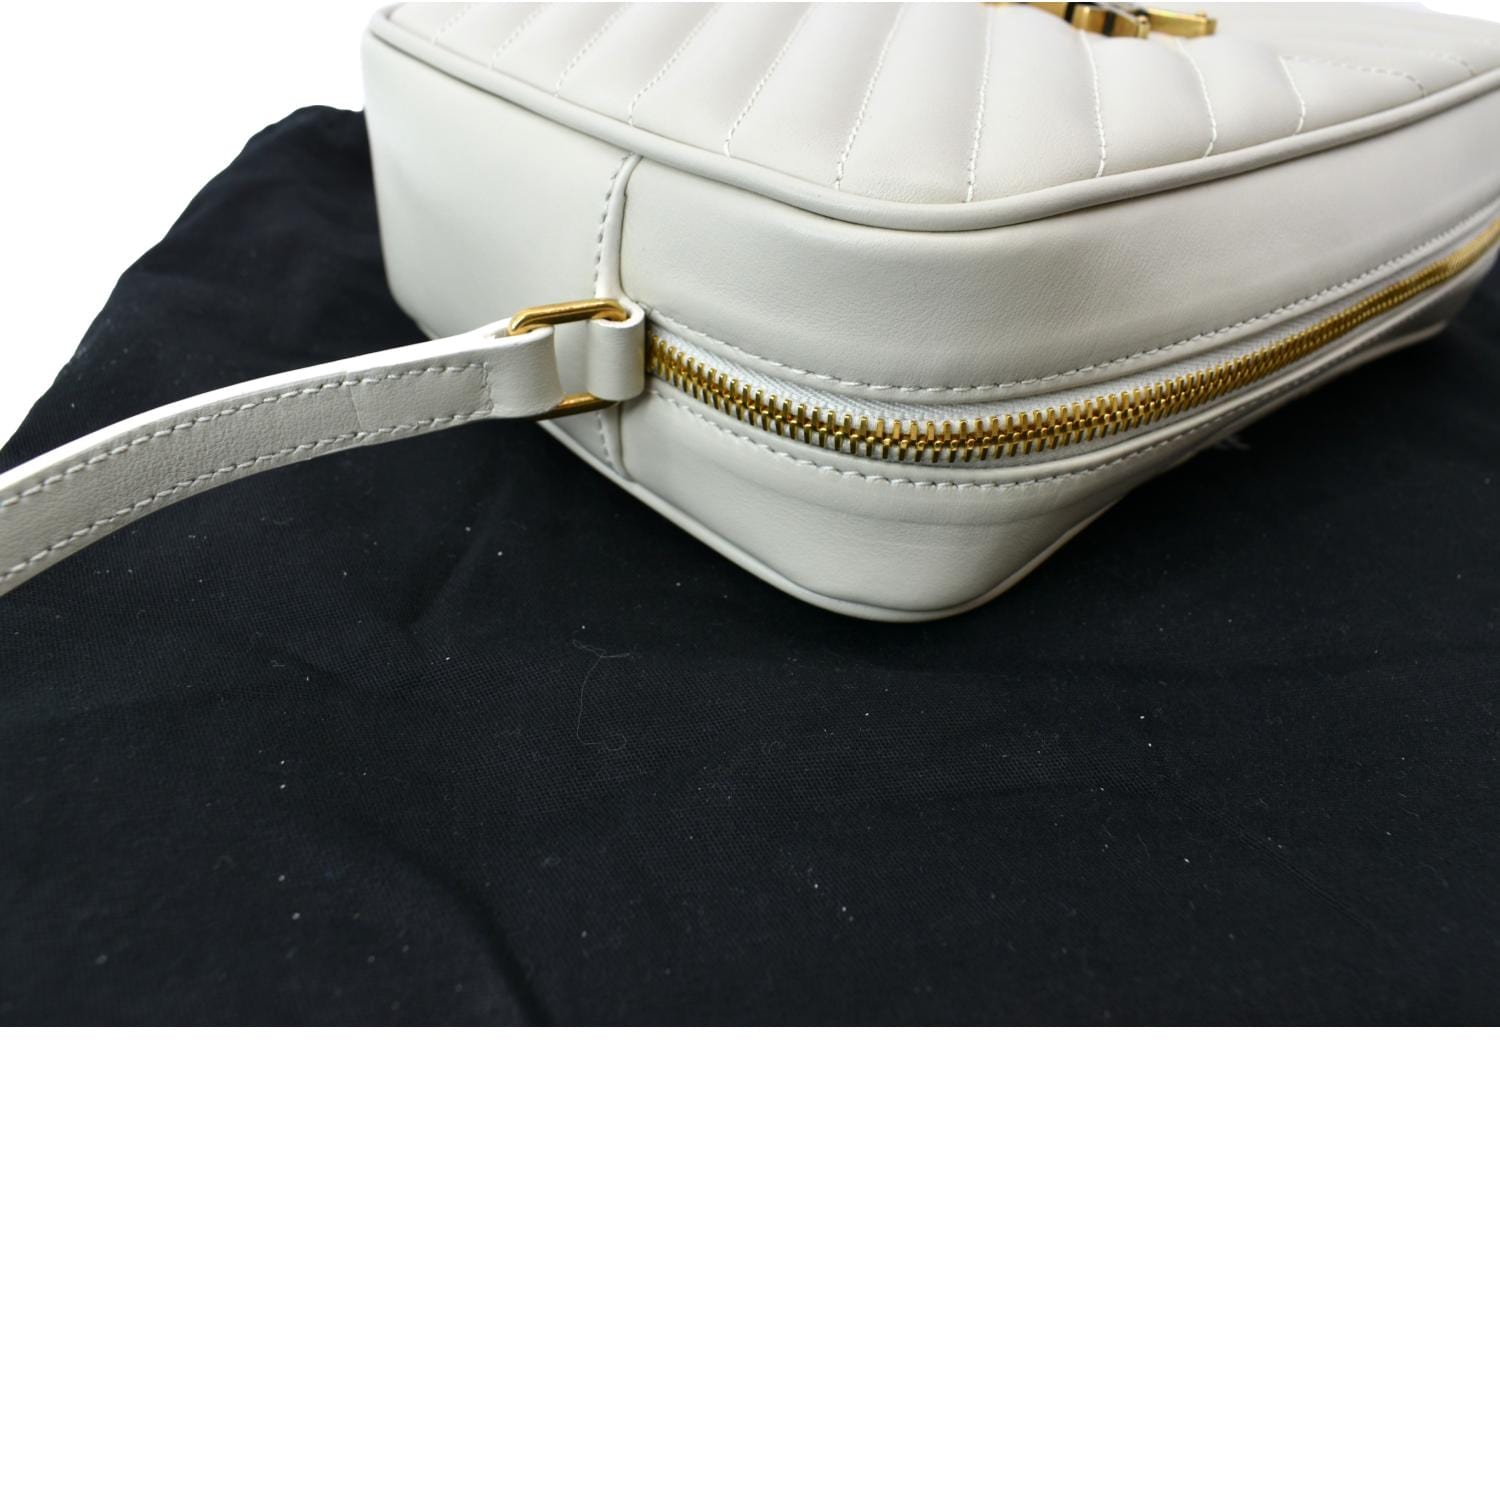 YSL Lou Camera Bag in Matelassé Leather 🌺🍇🍇 #bags #bag #style